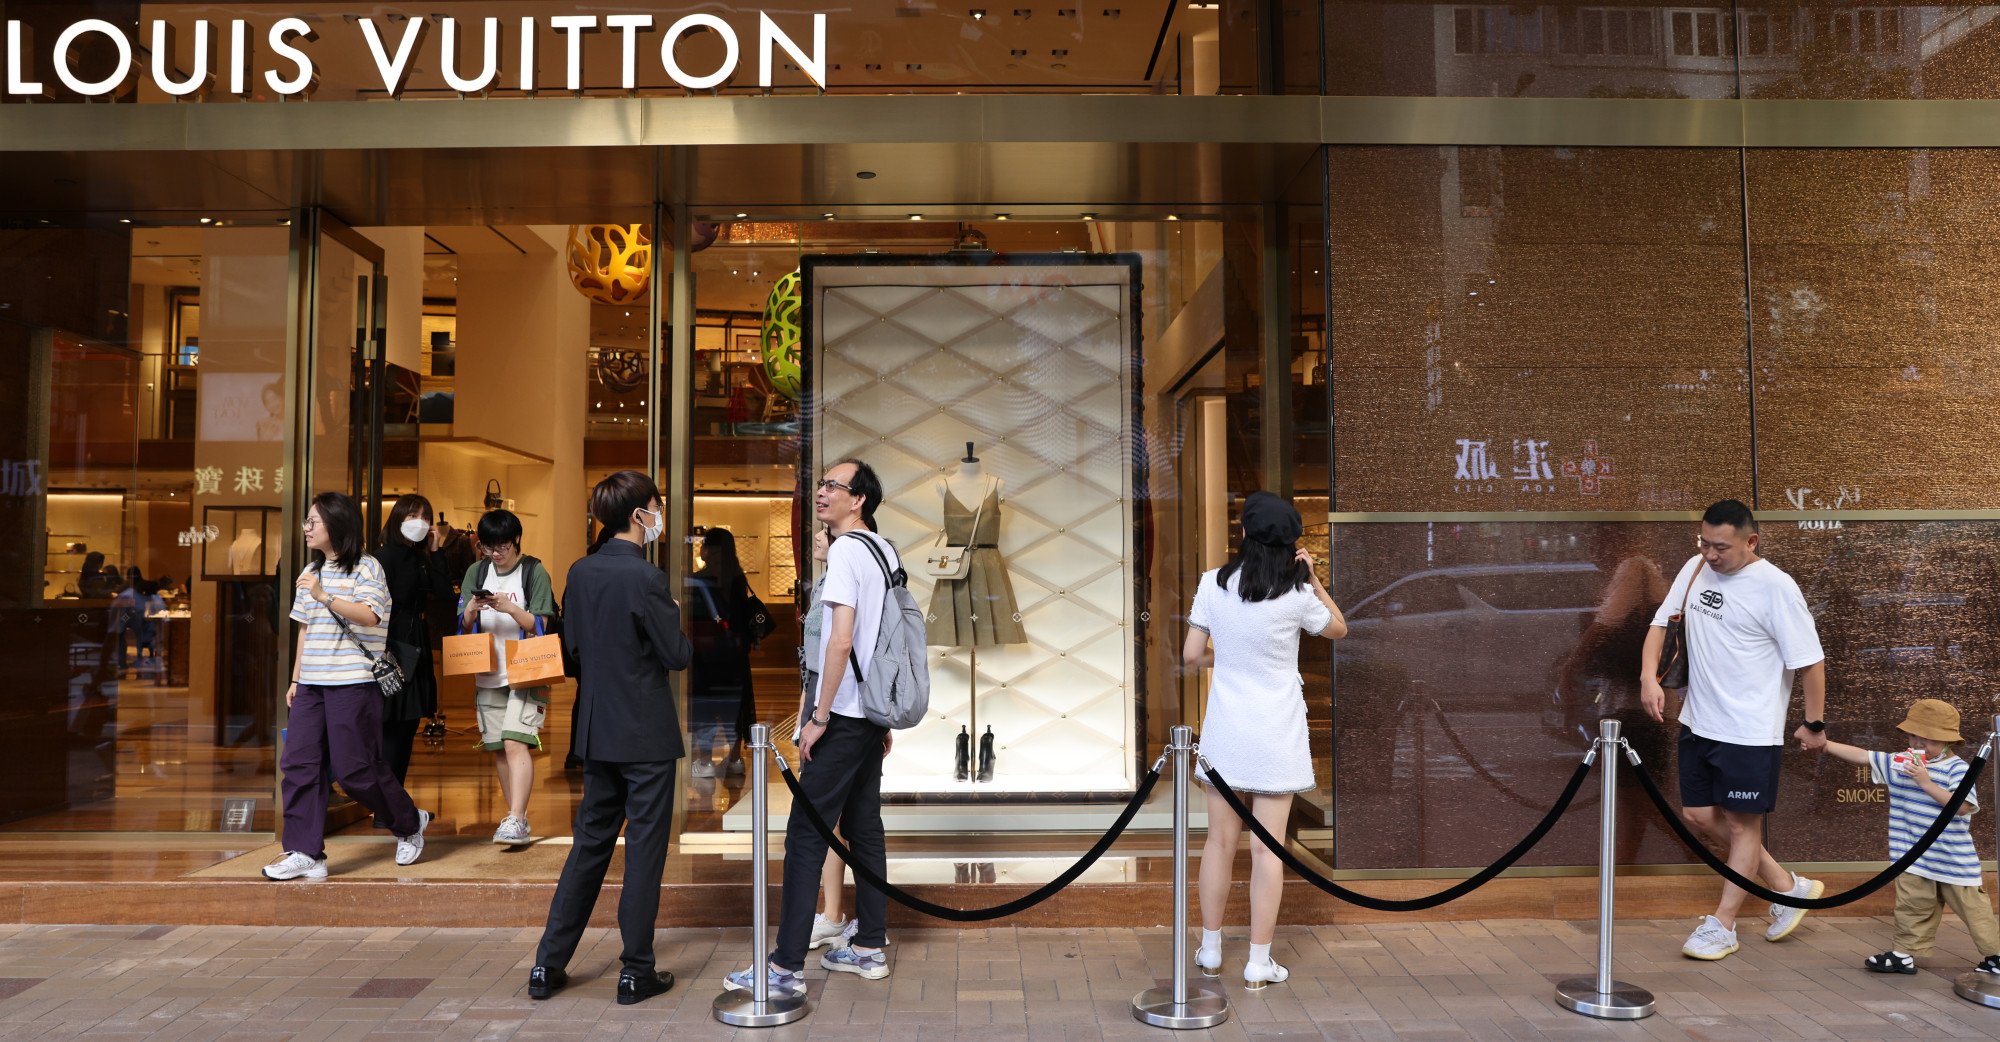 Louis Vuitton Hong Kong Prices!